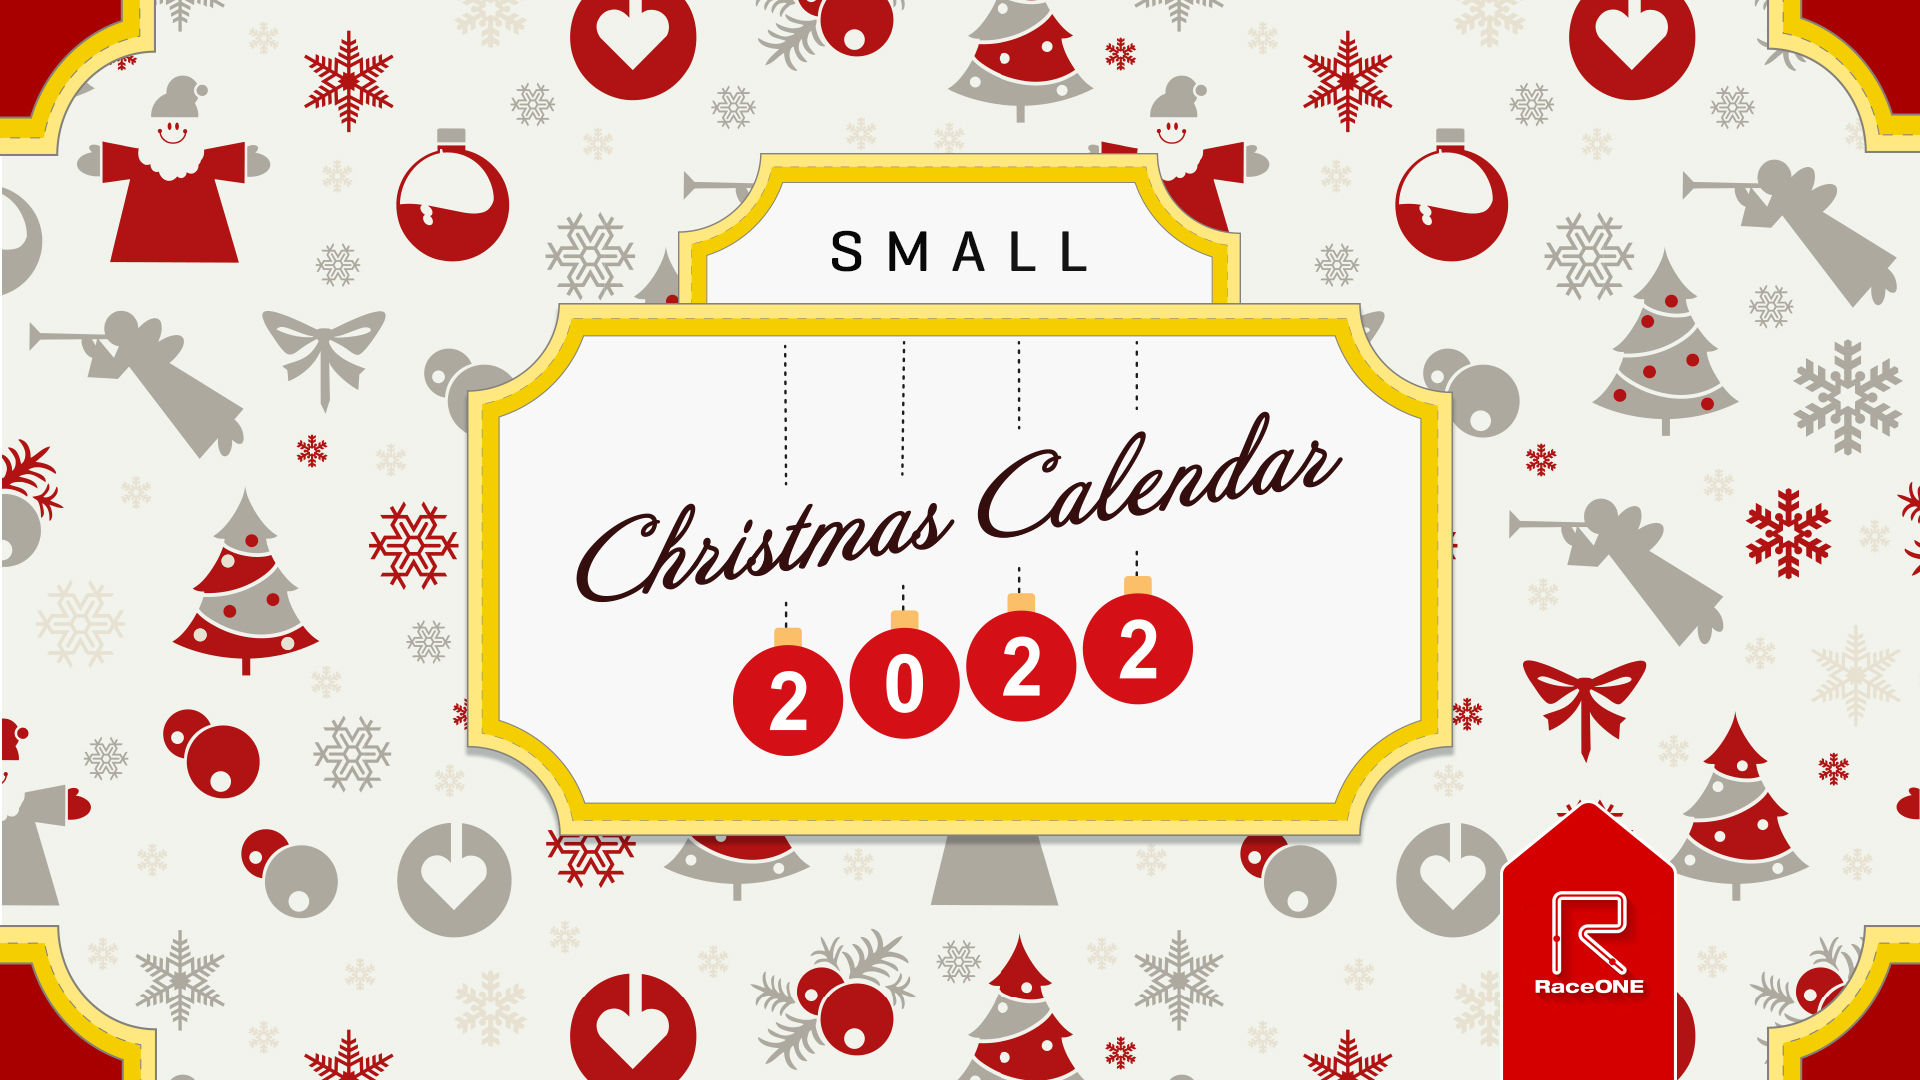 Lilla Julkalendern 2022 - Lucka #9